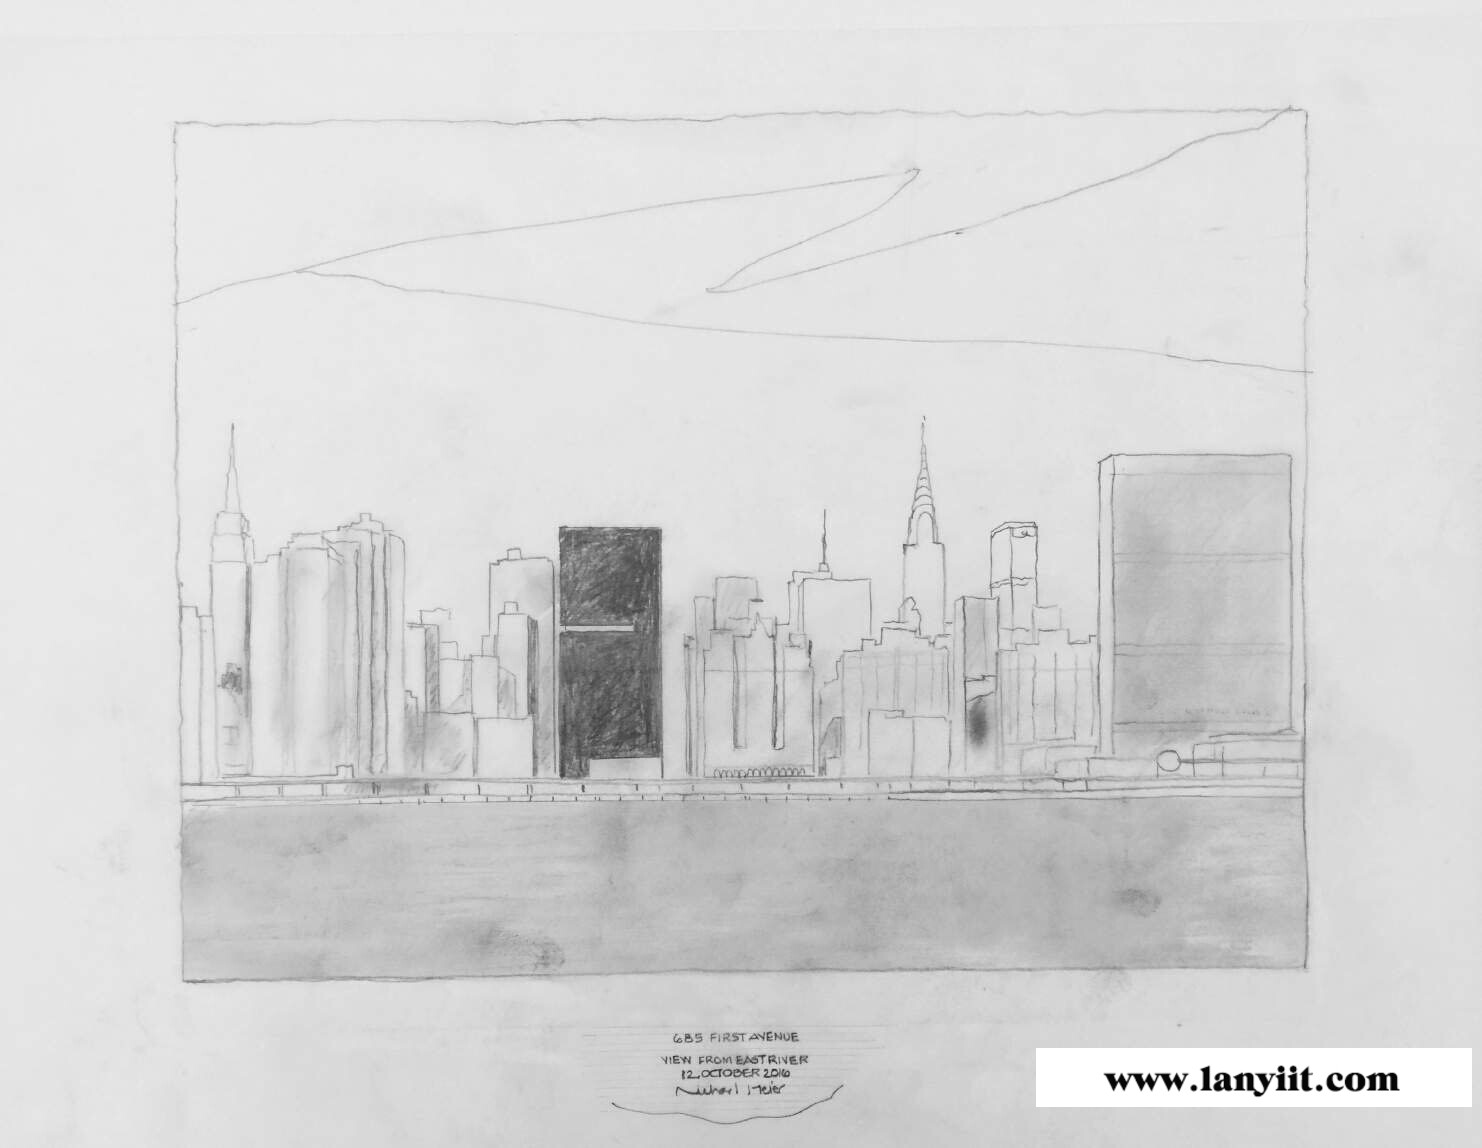 曼哈顿东高端楼盘推荐:联合国一号 全玻璃幕墙 坐享无敌河景和曼哈顿城市全景景观(图12)